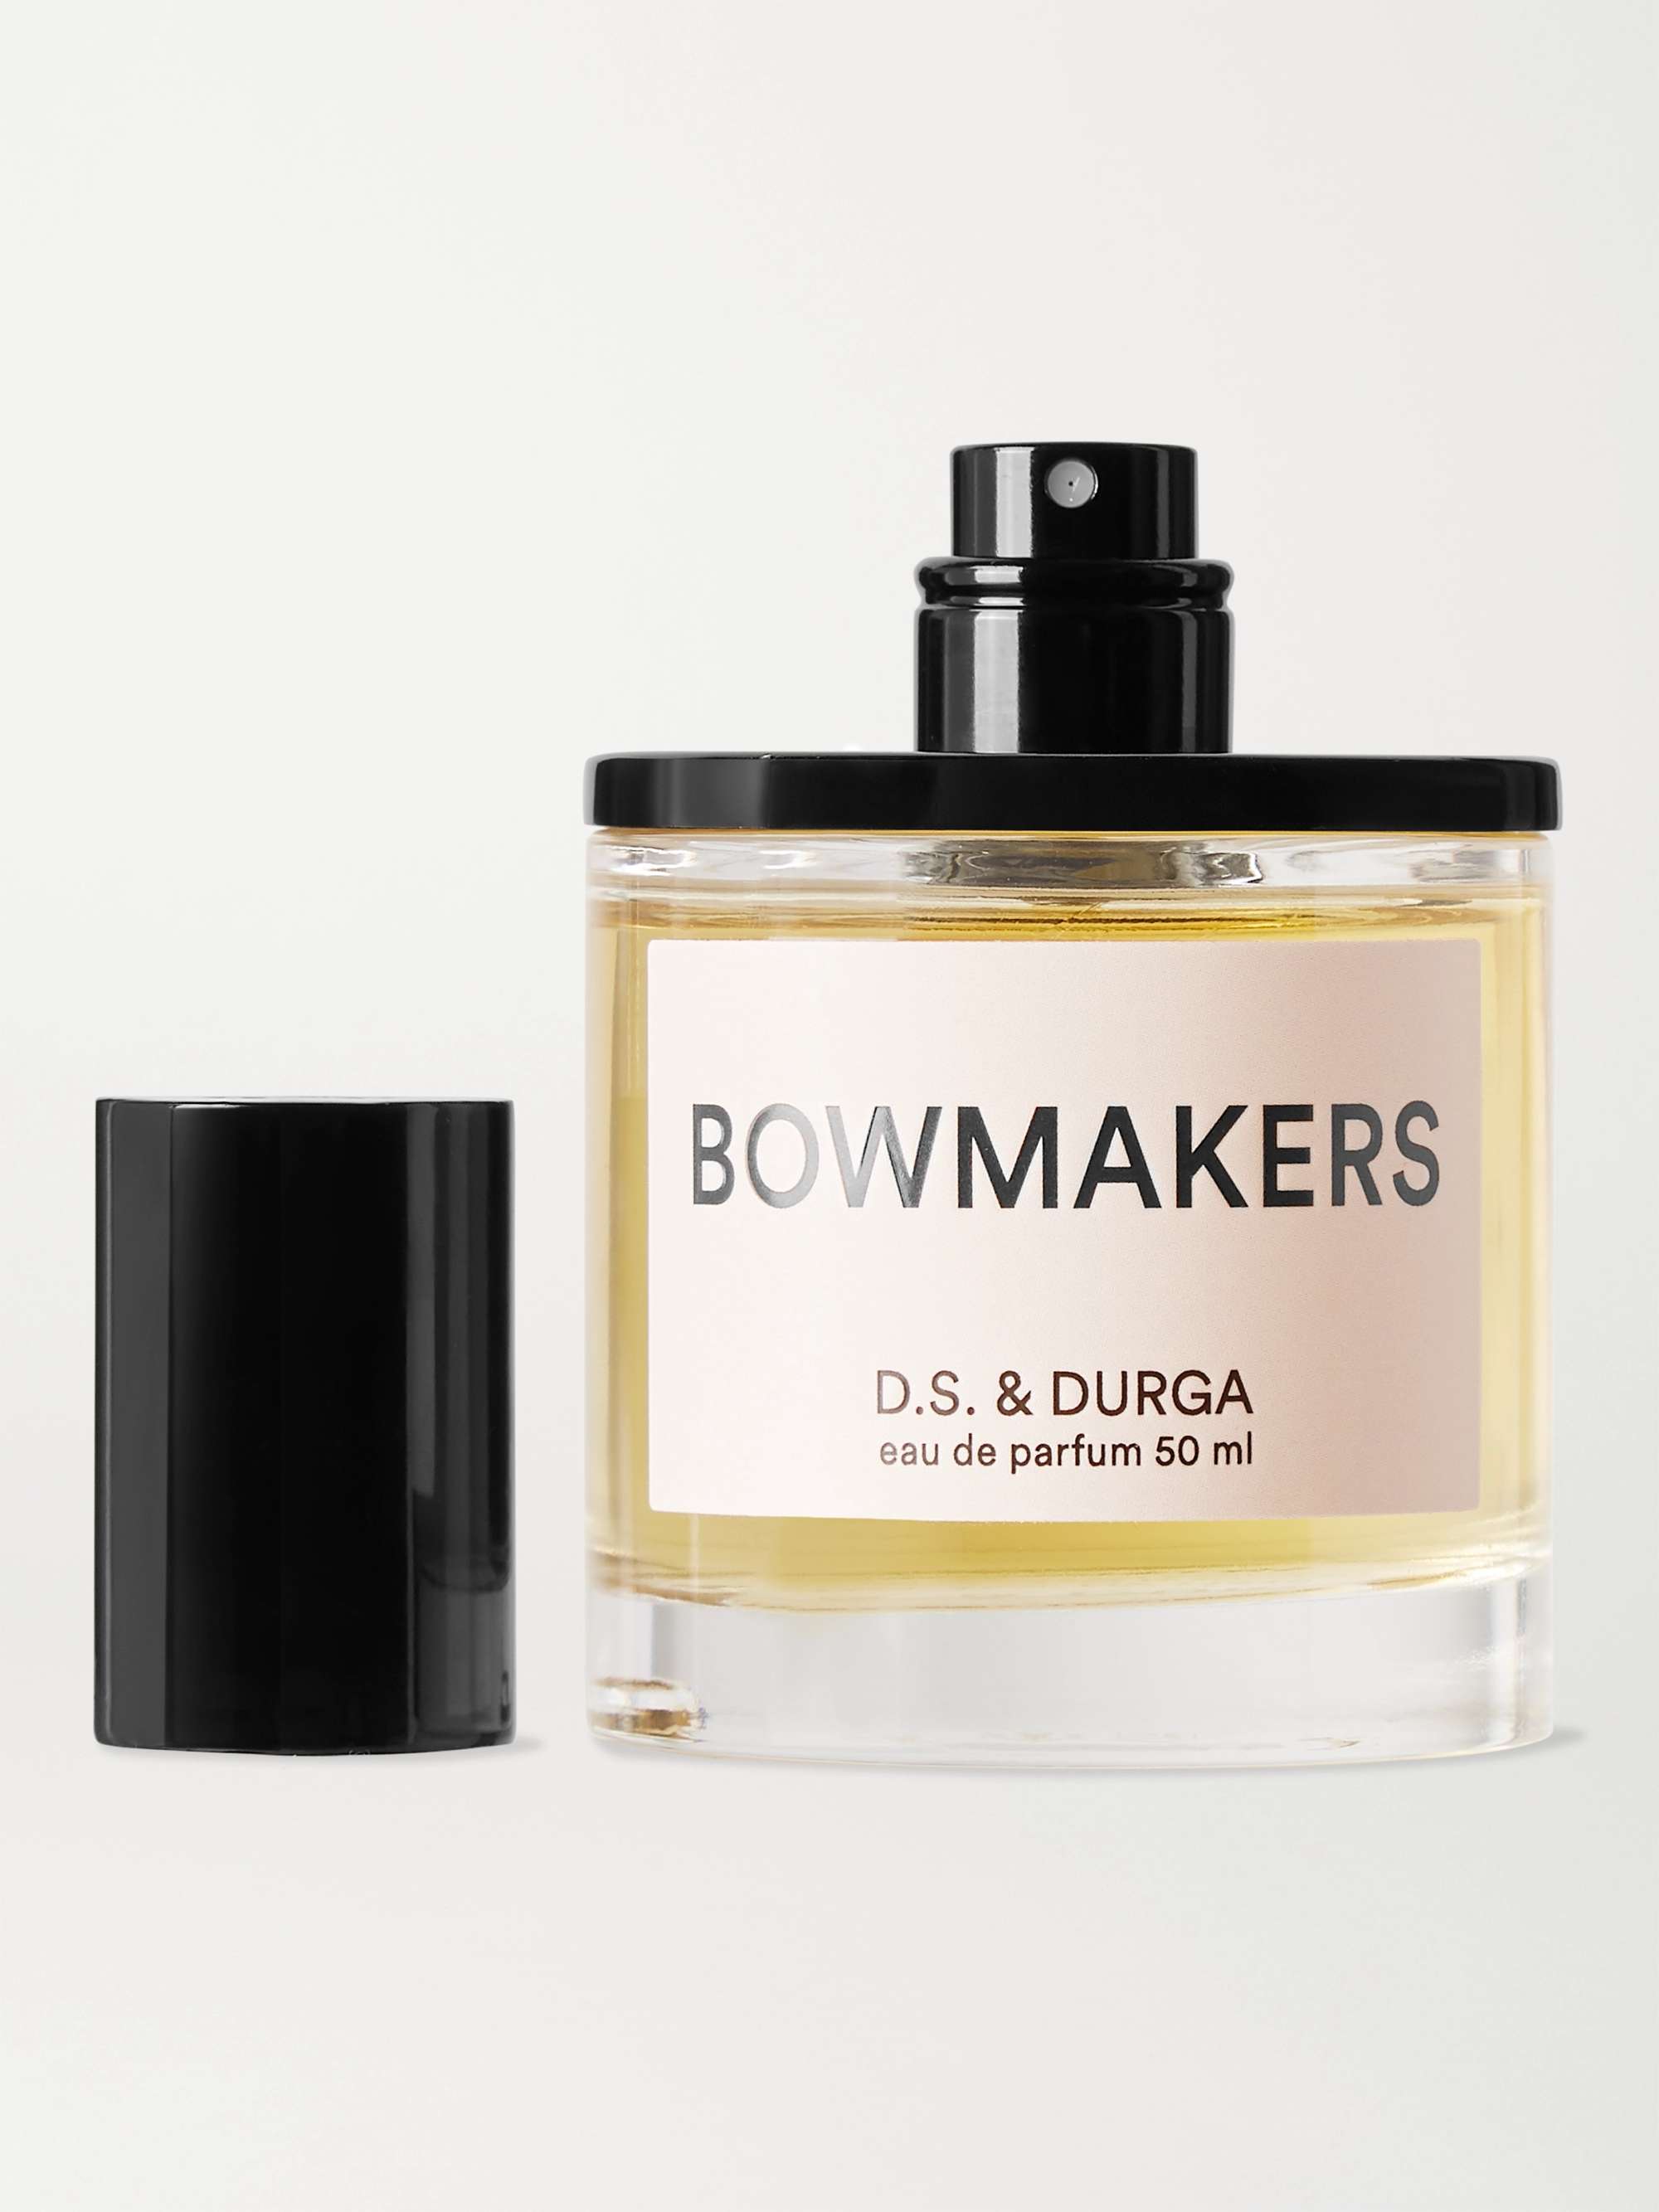 D.S. & DURGA Eau de Parfum - Bowmakers, 50ml